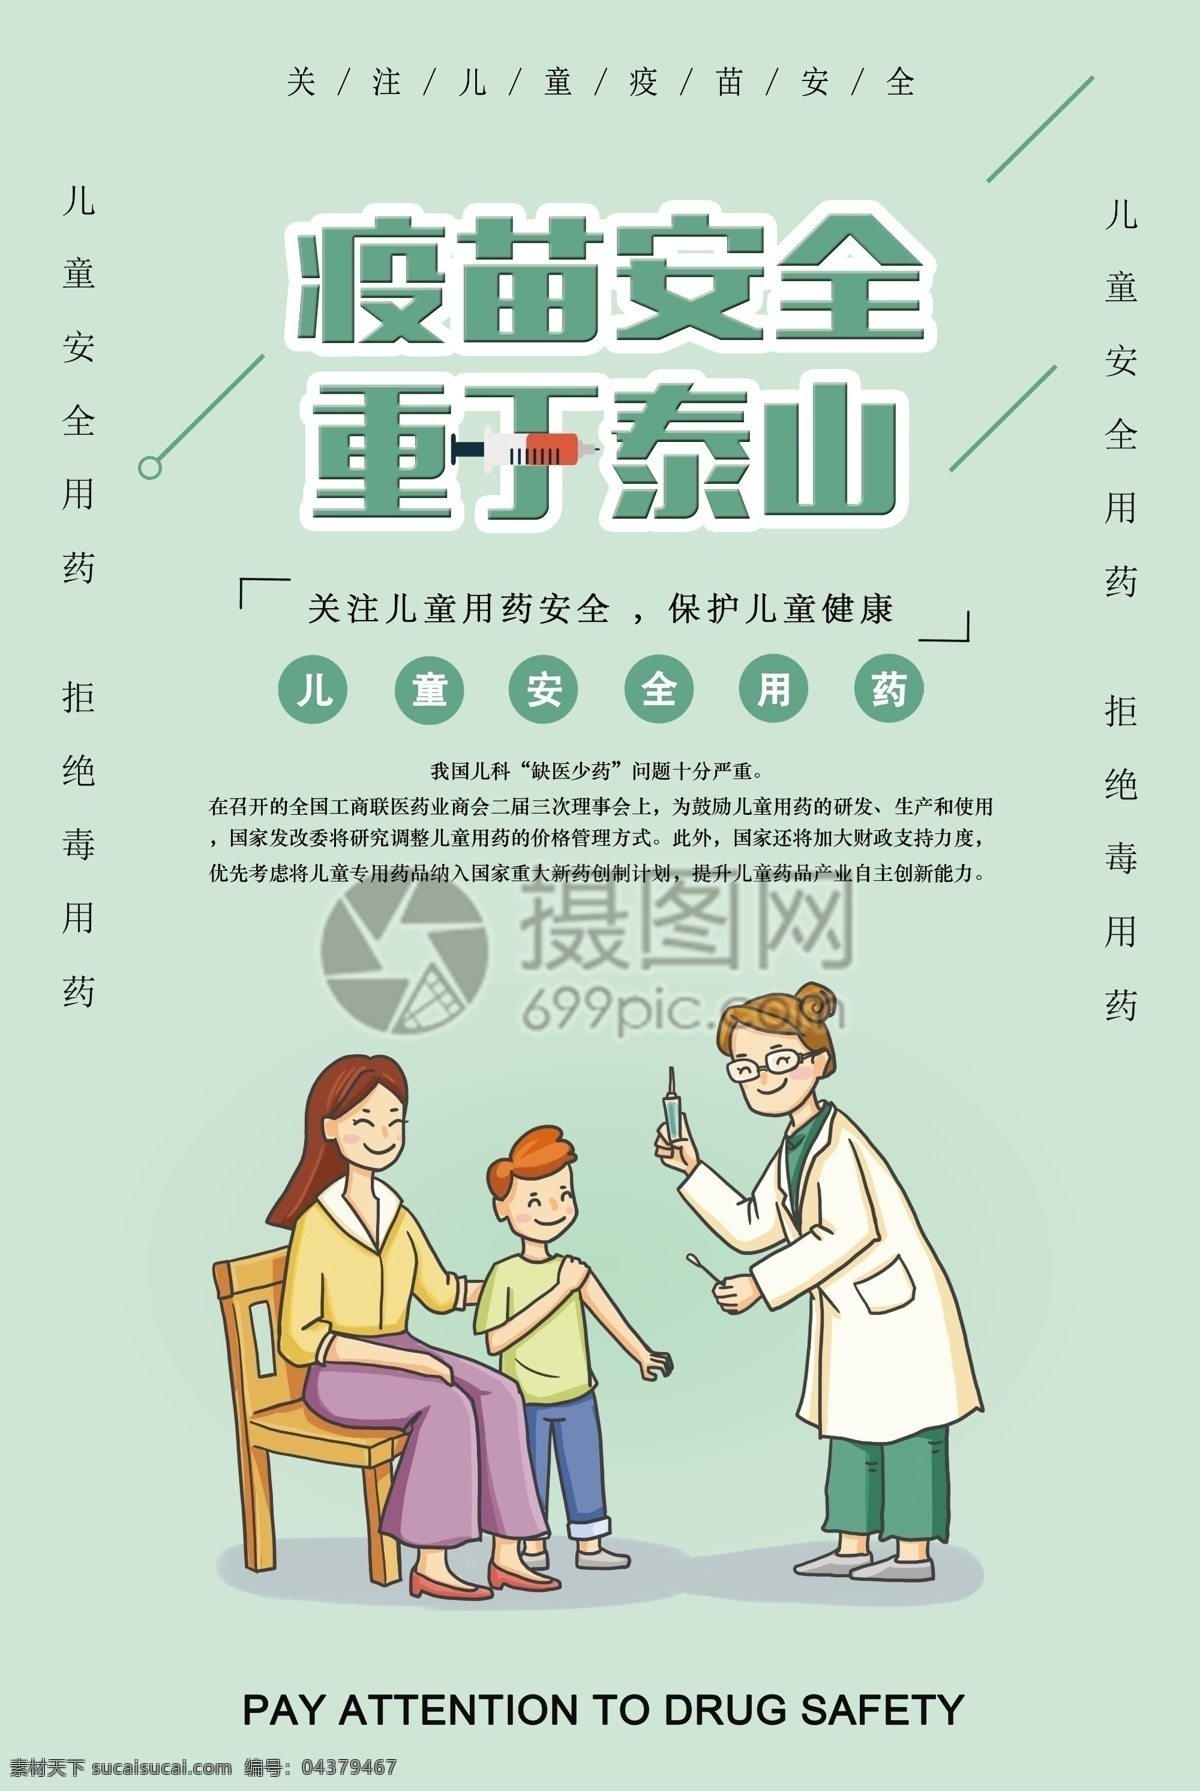 疫苗安全海报 疫苗安全 重于泰山 儿童 儿童健康 儿童用药 健康 拒绝毒疫苗 用药 医疗用药安全 安全用药